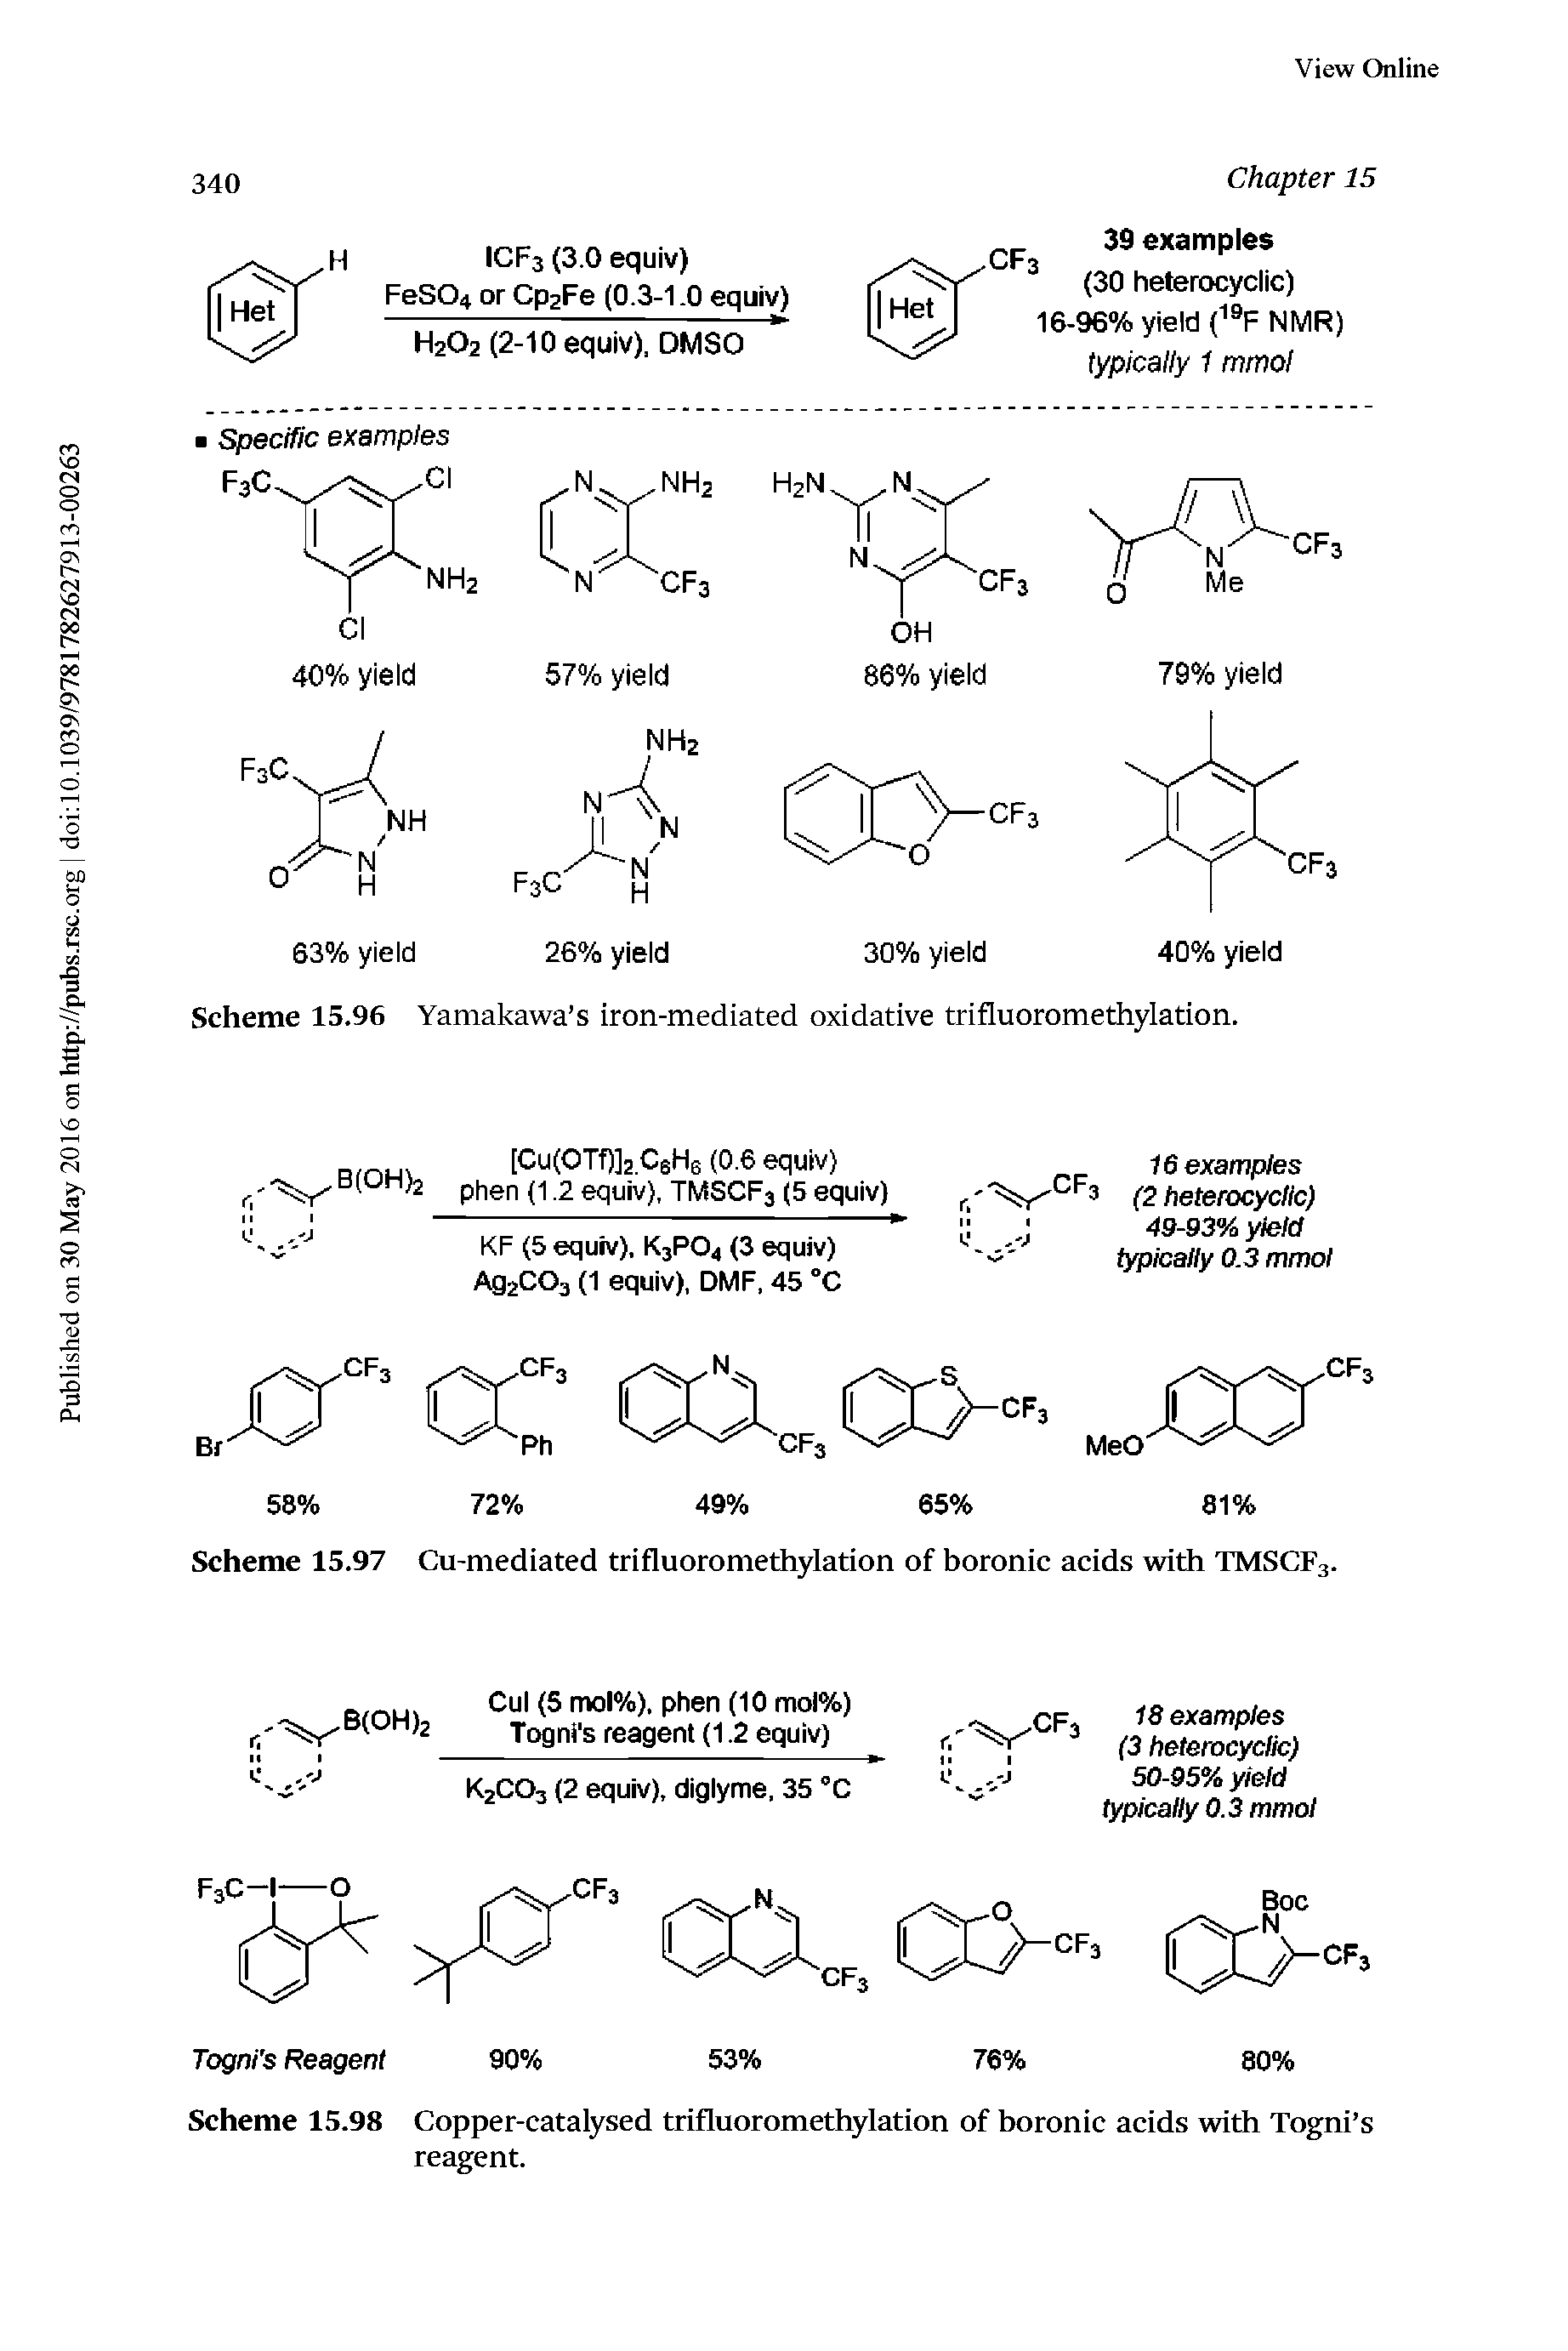 Scheme 15.97 Cu-mediated trifluoromethylation of boronic acids with TMSCF3.